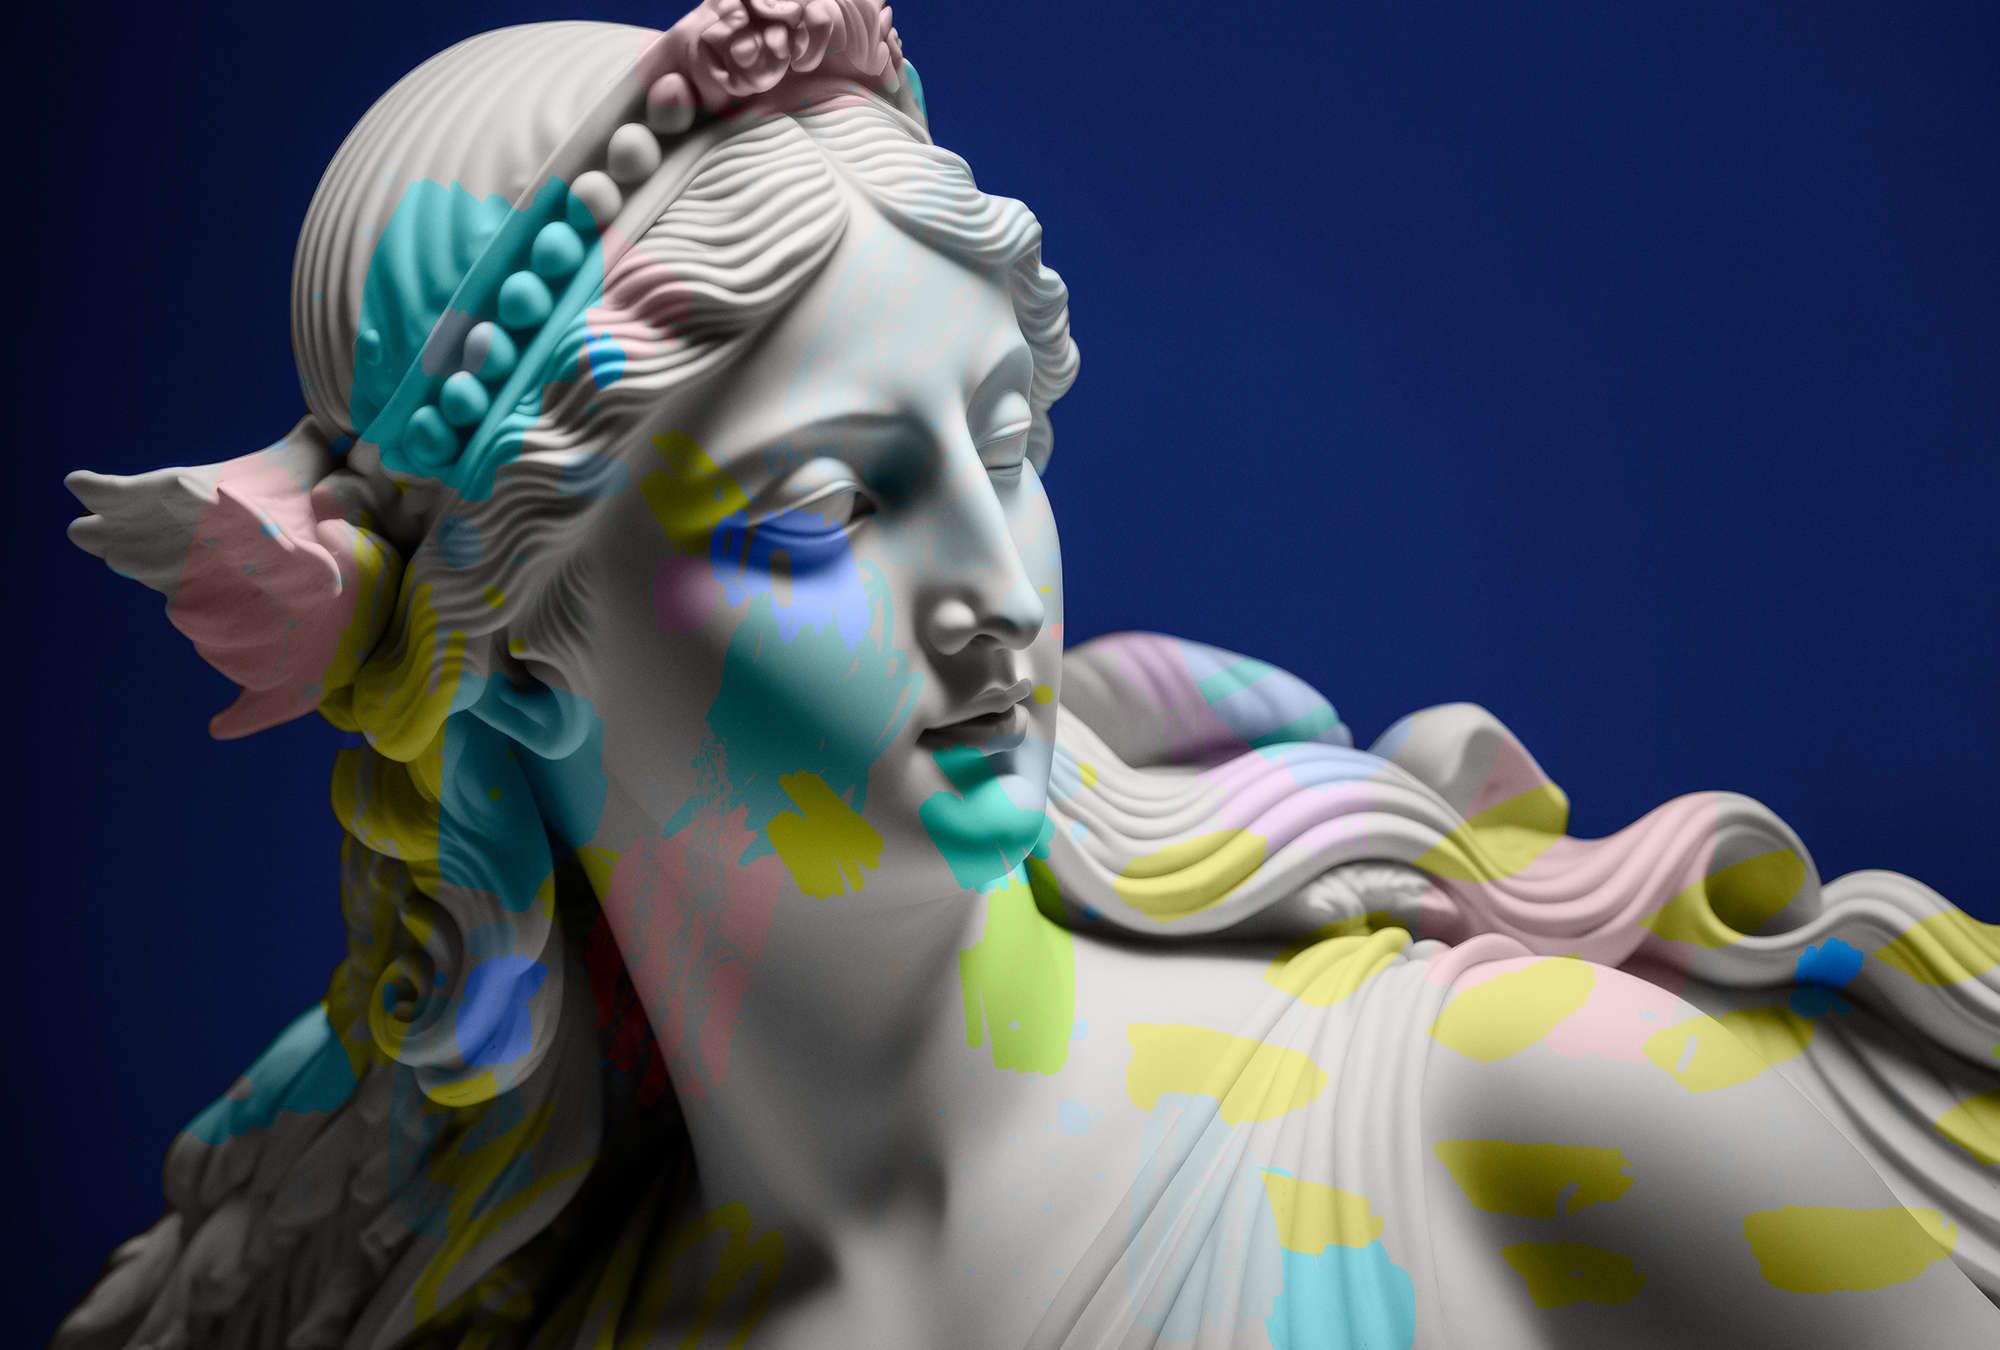             Fotomurali »anthea« - scultura femminile con accenti colorati - Materiali non tessuto liscio, leggermente perlato e scintillante
        